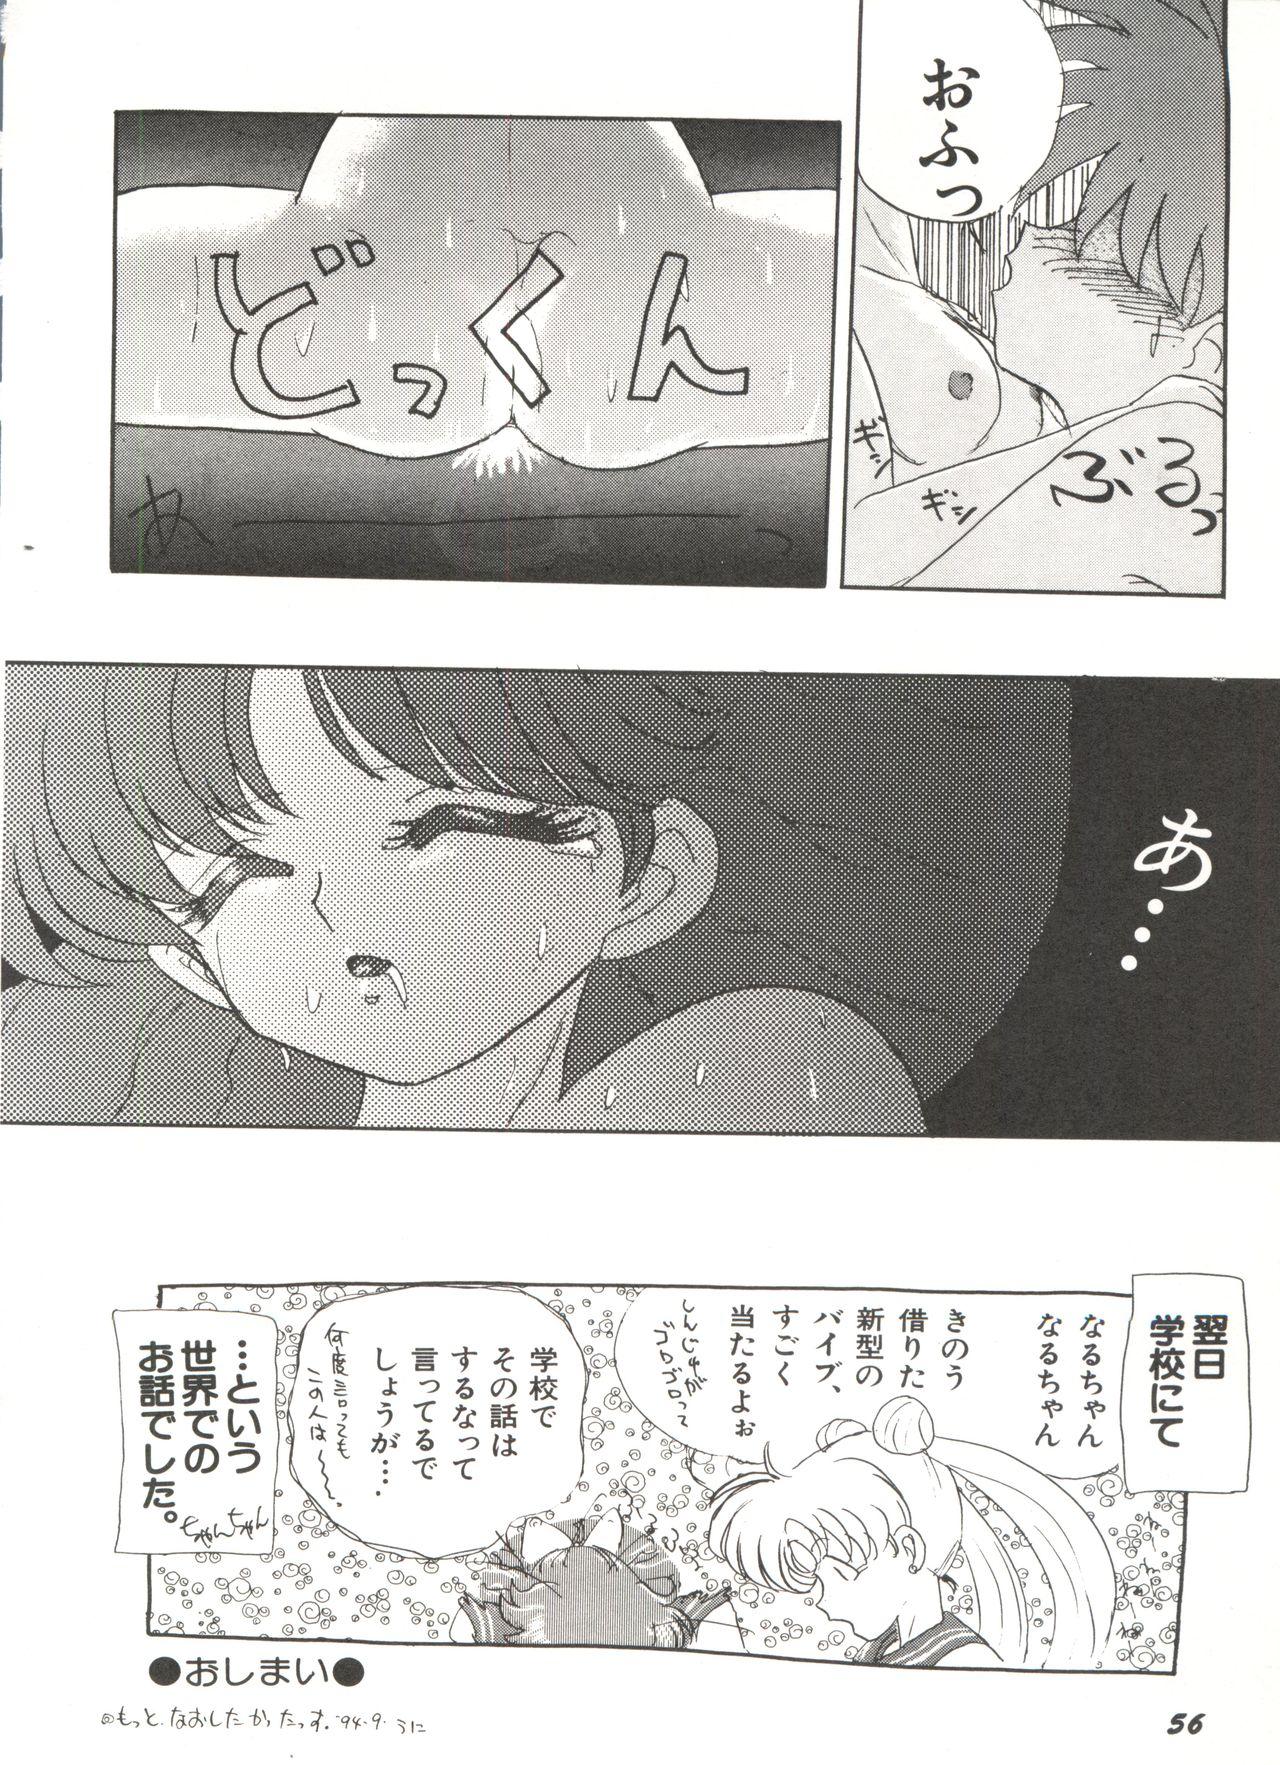 Bishoujo Doujinshi Anthology 7 - Moon Paradise 4 Tsuki no Rakuen 60